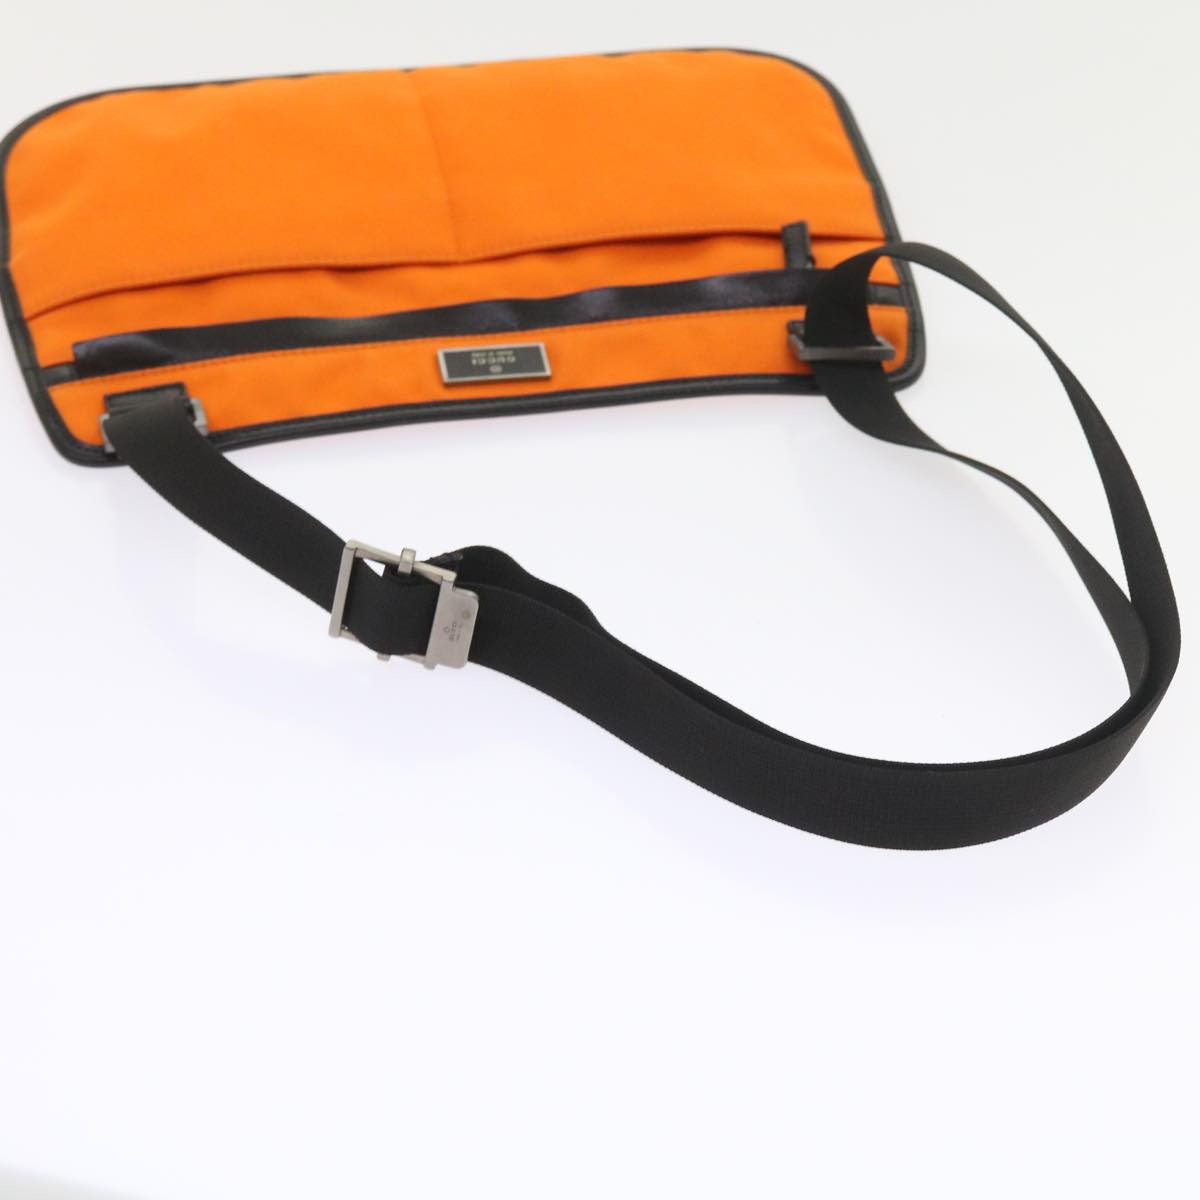 Gucci Unisex Orange Canvas Shoulder Bag in Orange